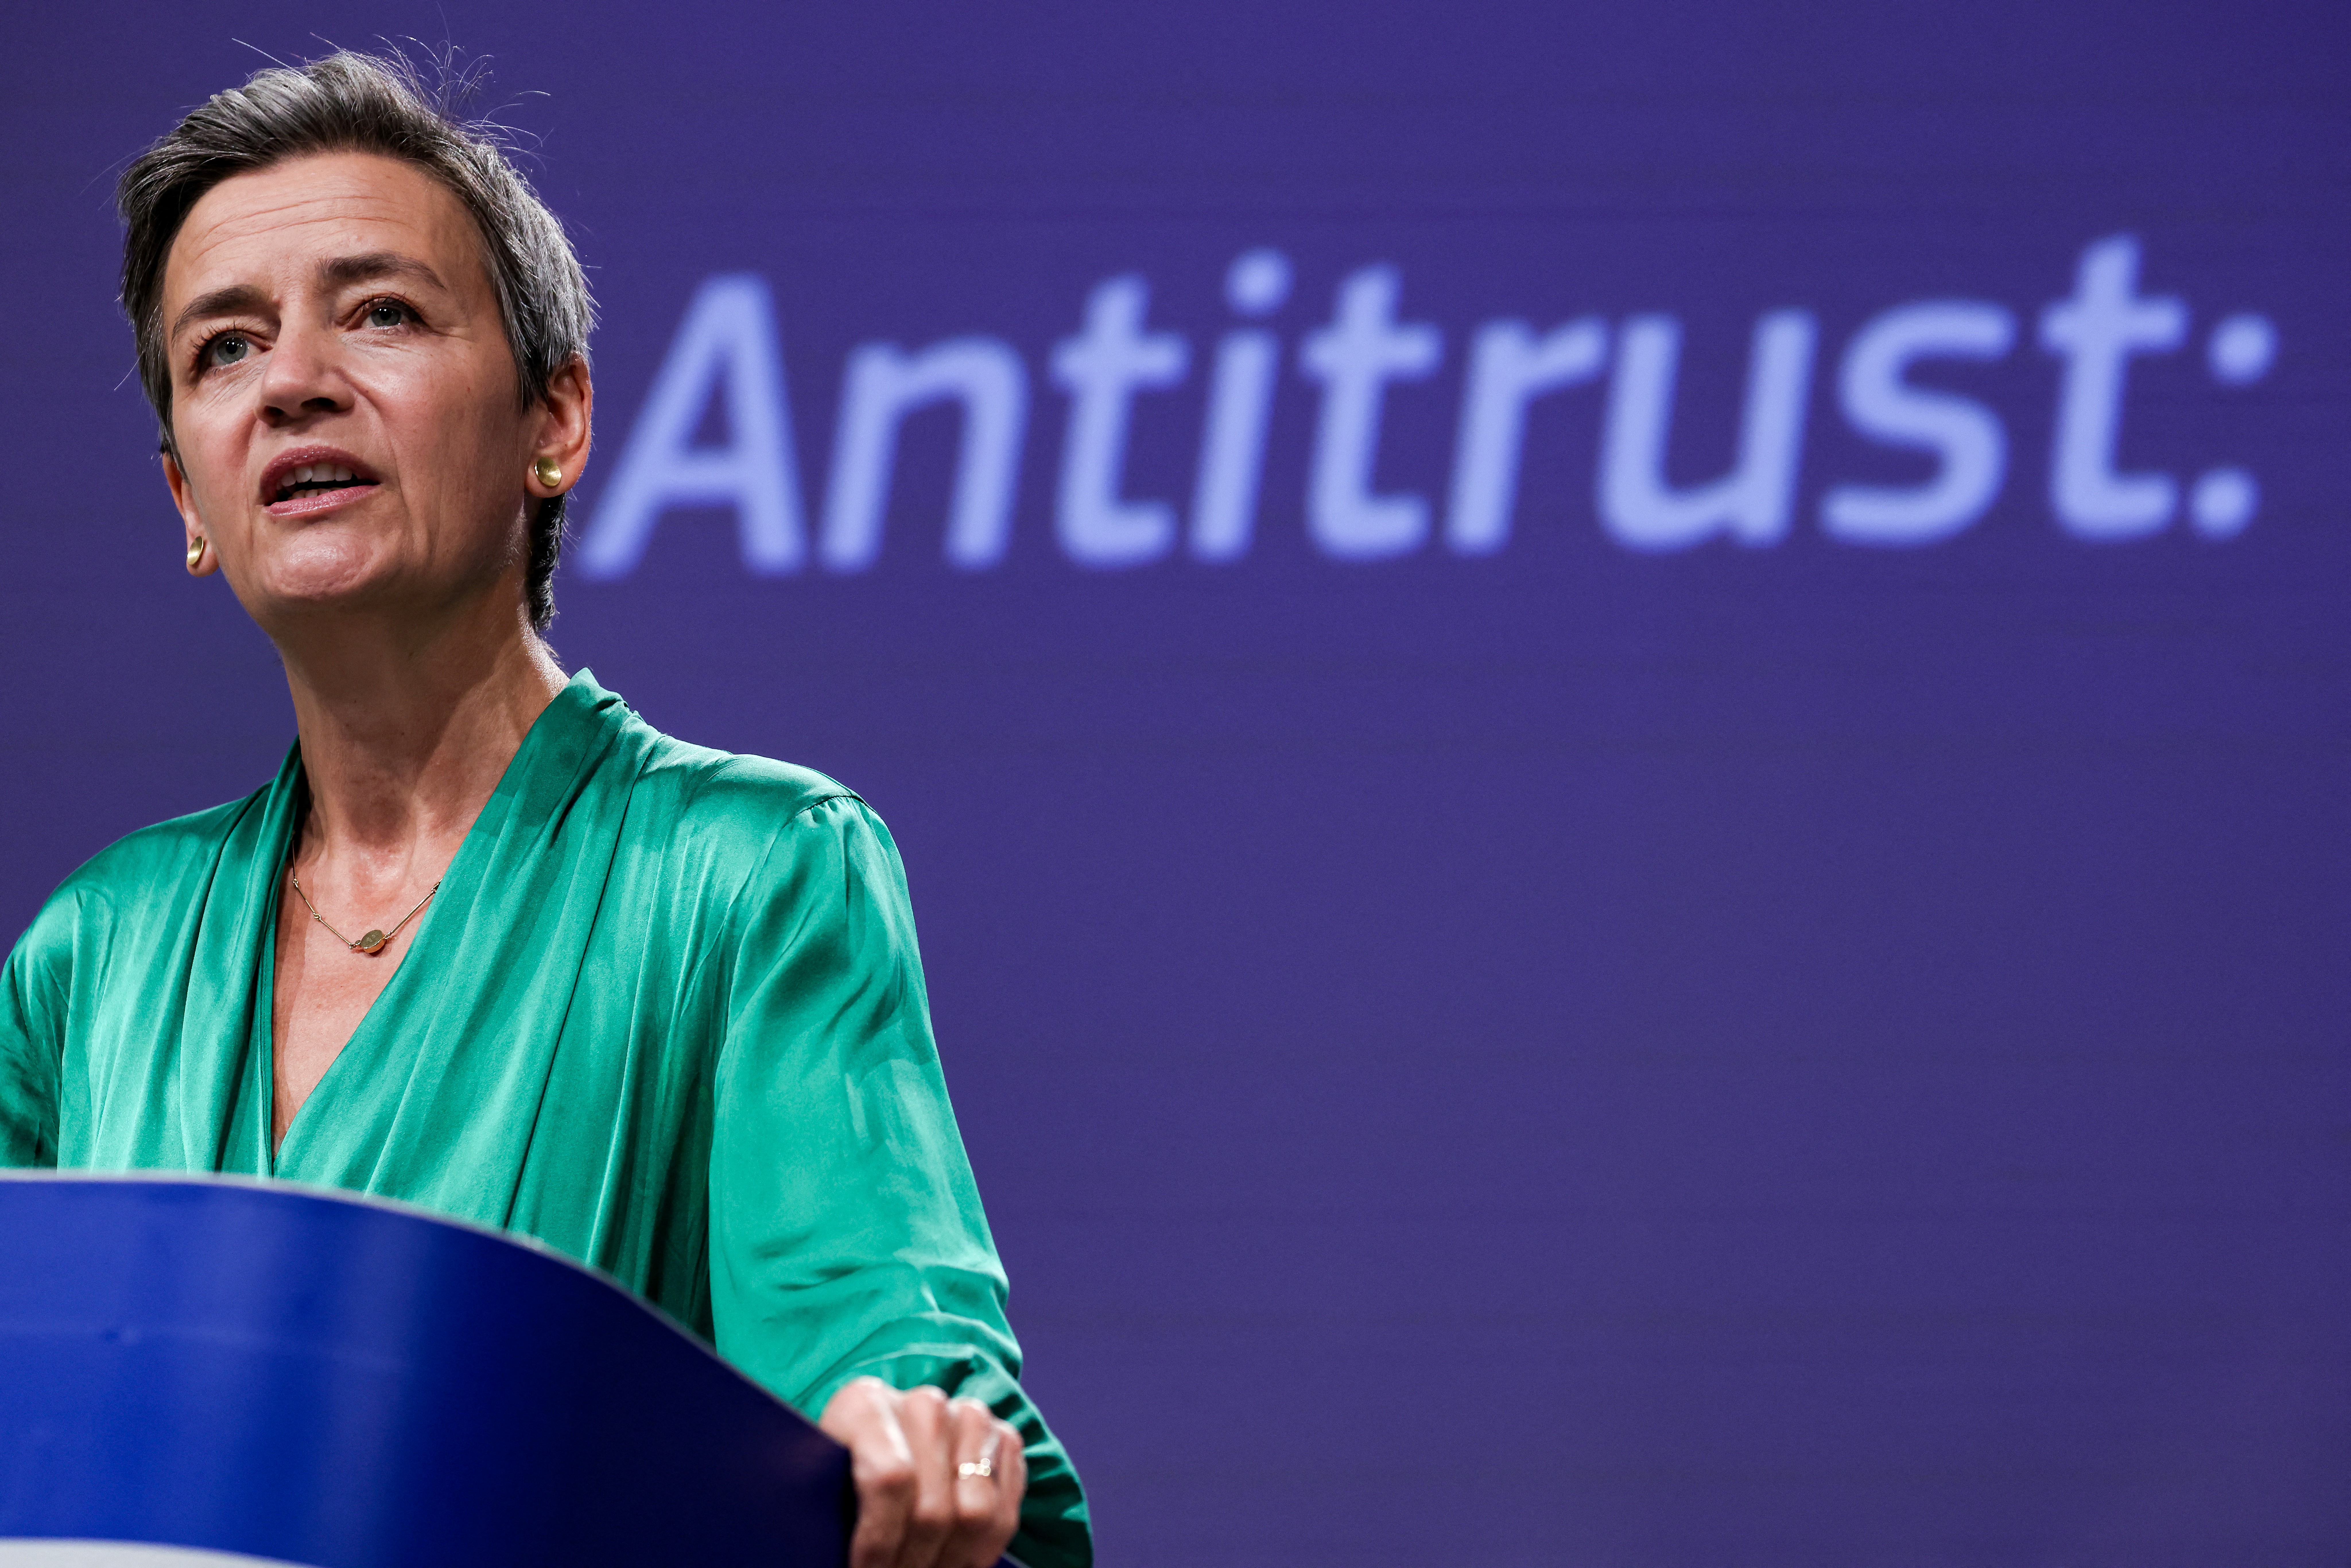 EU schikt in AdBlue antitrustzaak met €875 miljoen boete voor VW en BMW